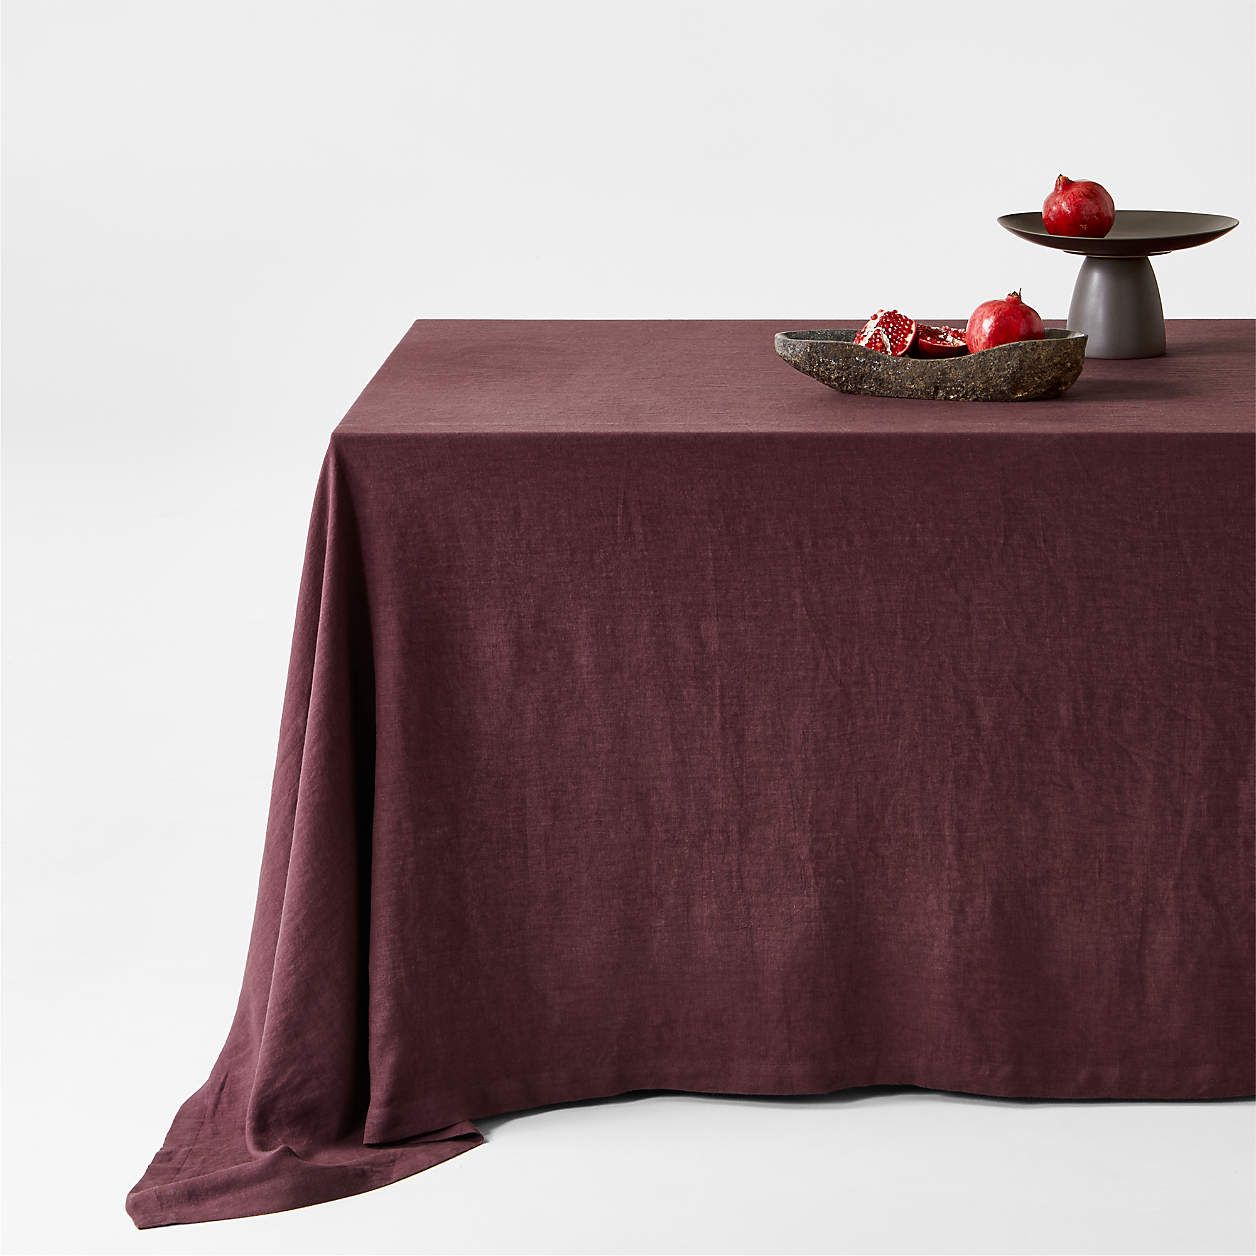 Marin Desert Green Oversized European Flax -Certified Linen Tablecloth + Reviews | Crate & Barrel | Crate & Barrel